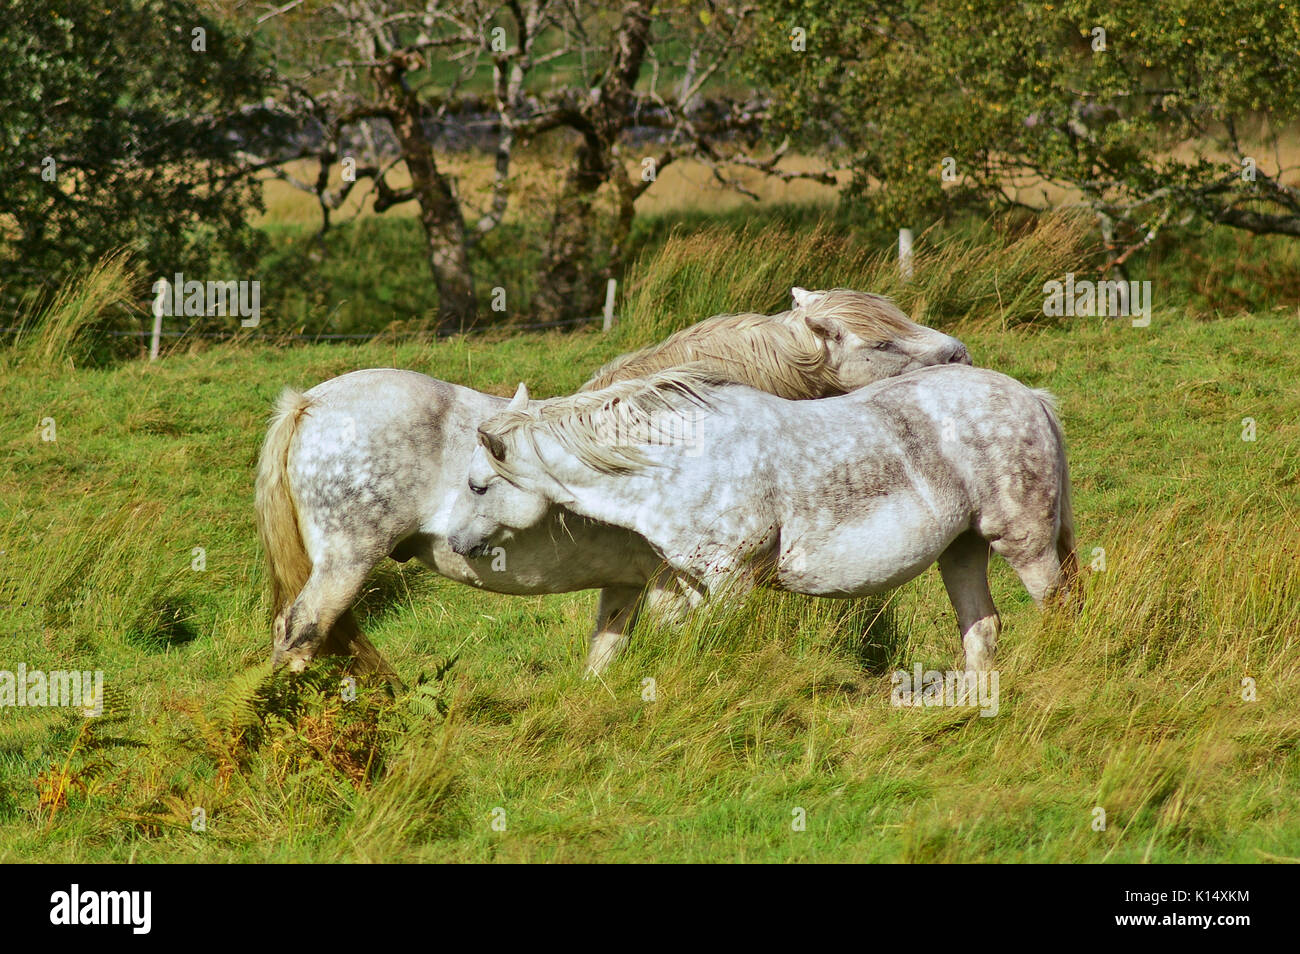 Deux chevaux gris pommelé sur un vert Pâturage caressant affectueusement Banque D'Images